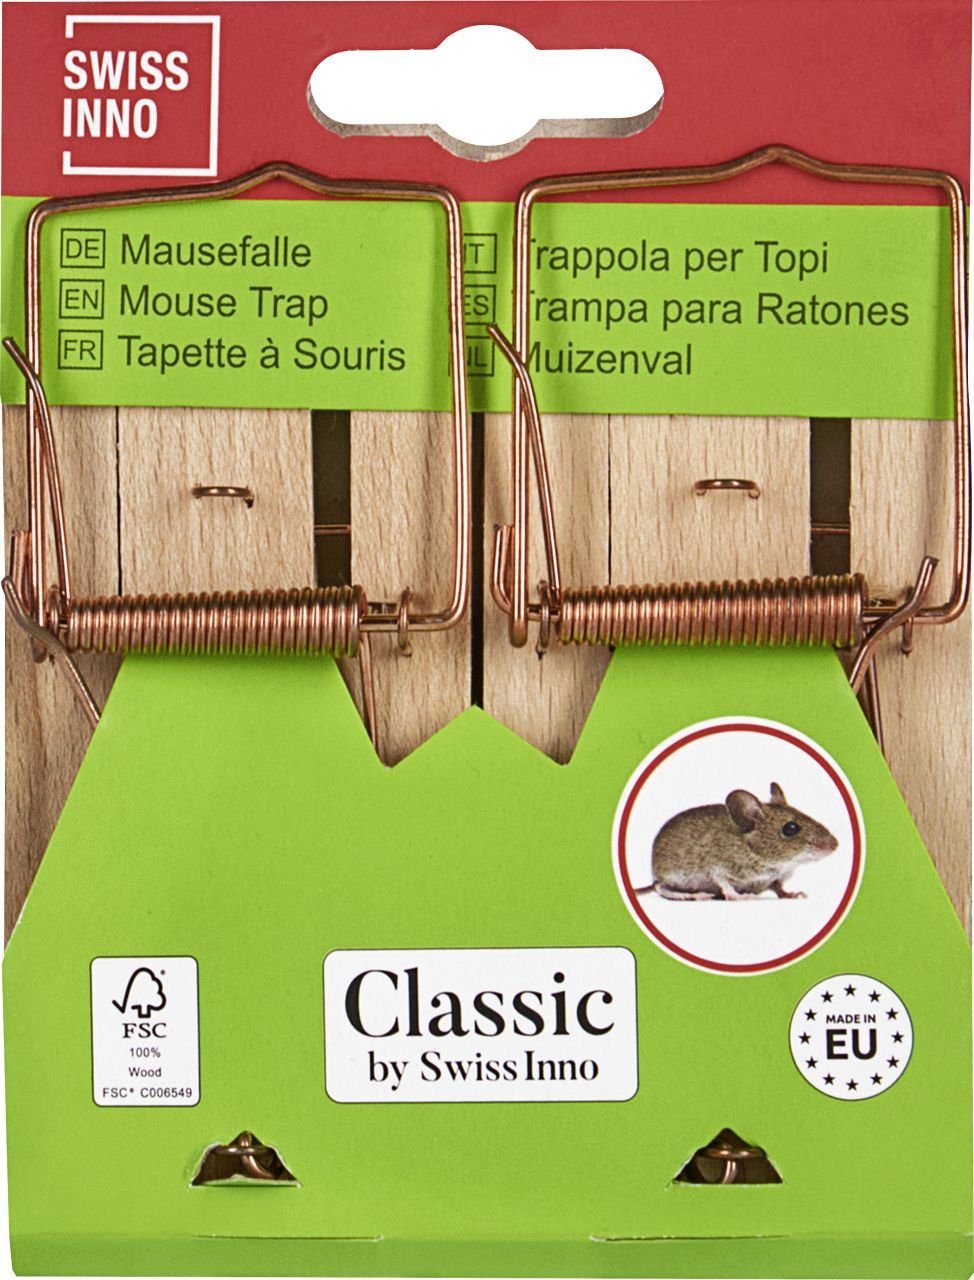 Swissinno Holz-Mausefalle Swissinno zertifiziert Insektenvernichtungsmittel FSC Classic